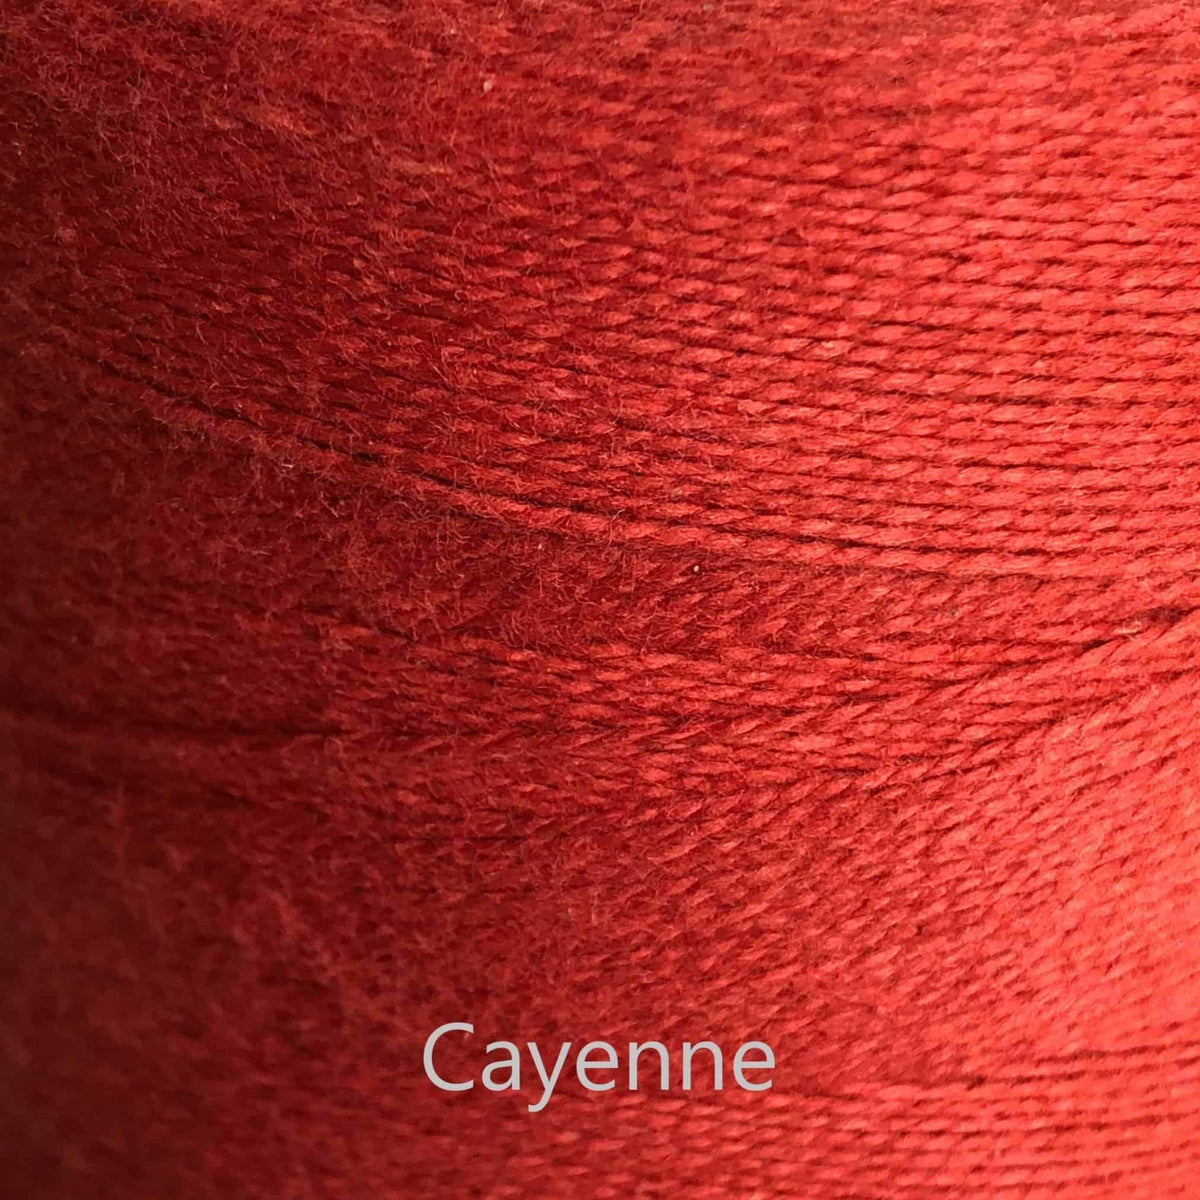 16/2 cotton weaving yarn cayenne